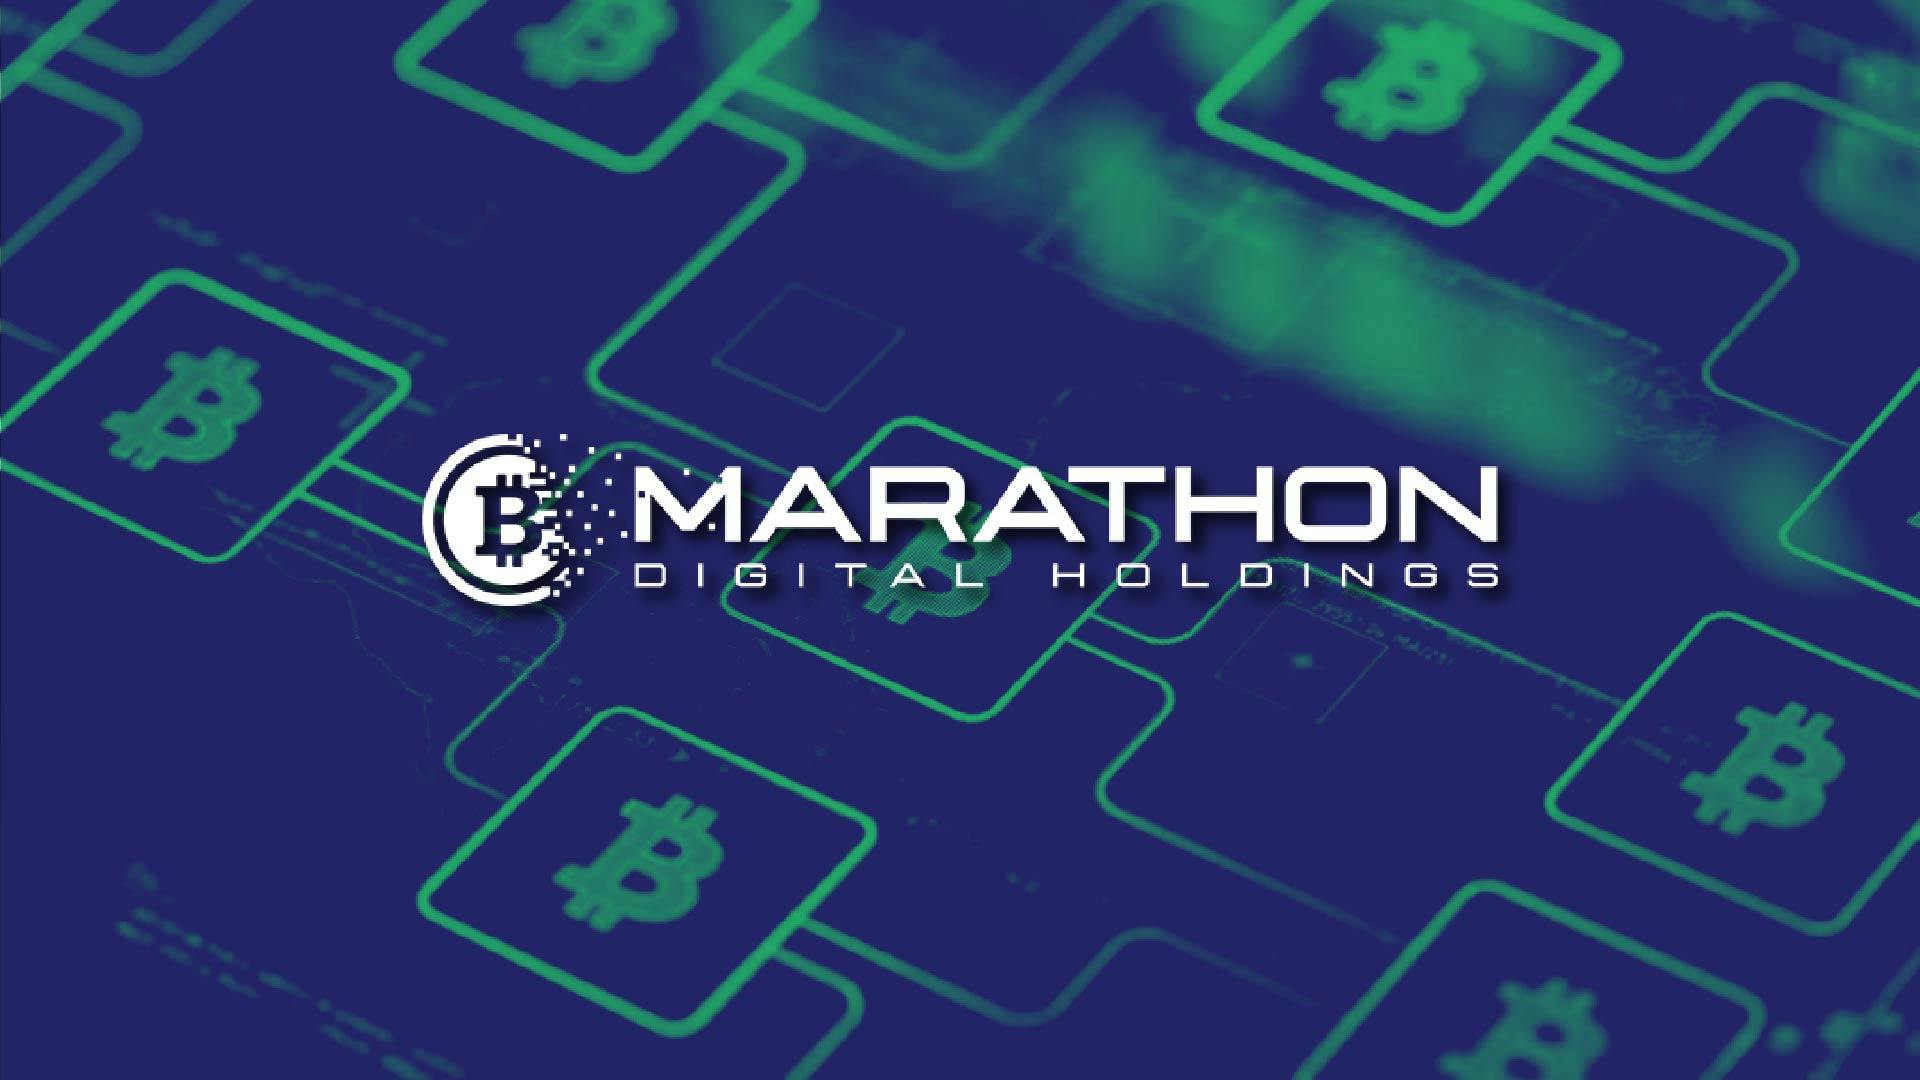 Marathon berencana menambahkan sekitar 65 ribu penambang yang akan online dalam 90 hari ke depan. (Foto CDI)